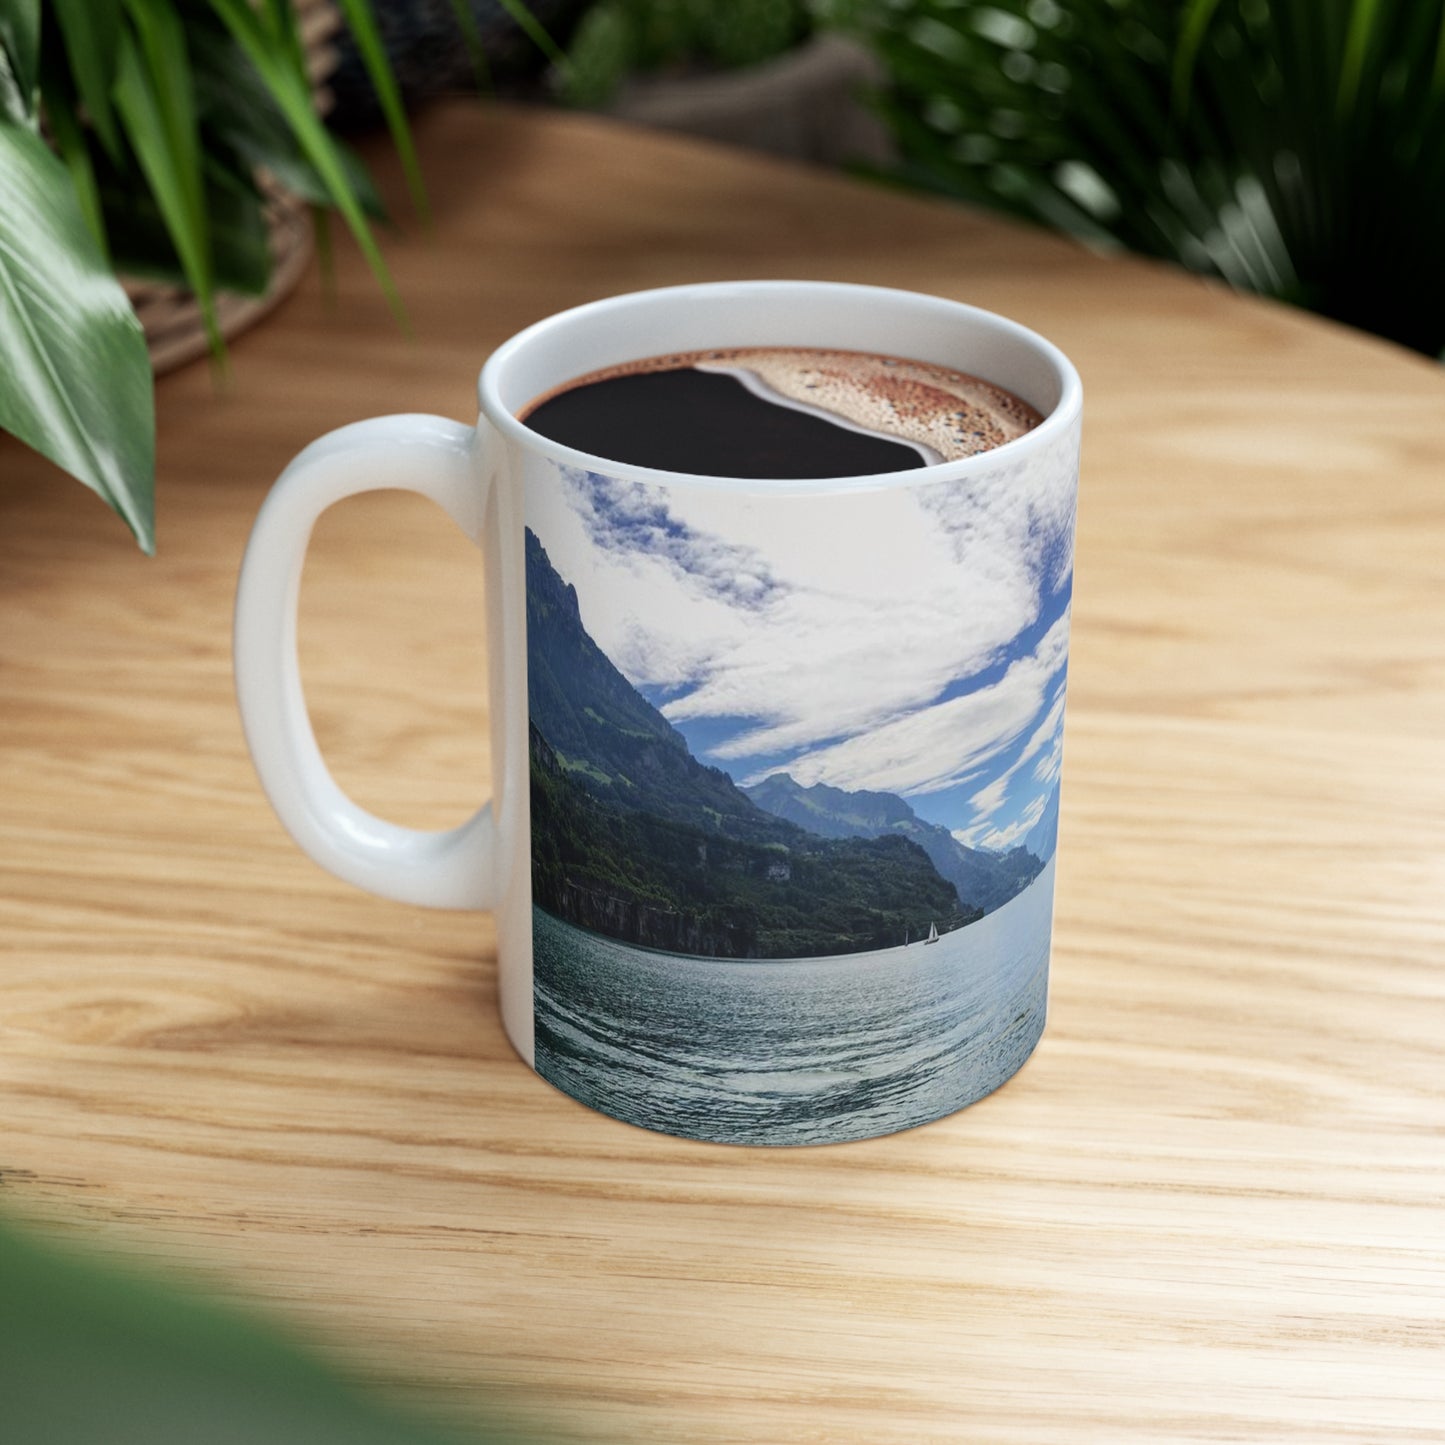 Lake Lucerne Ceramic Mug 11oz